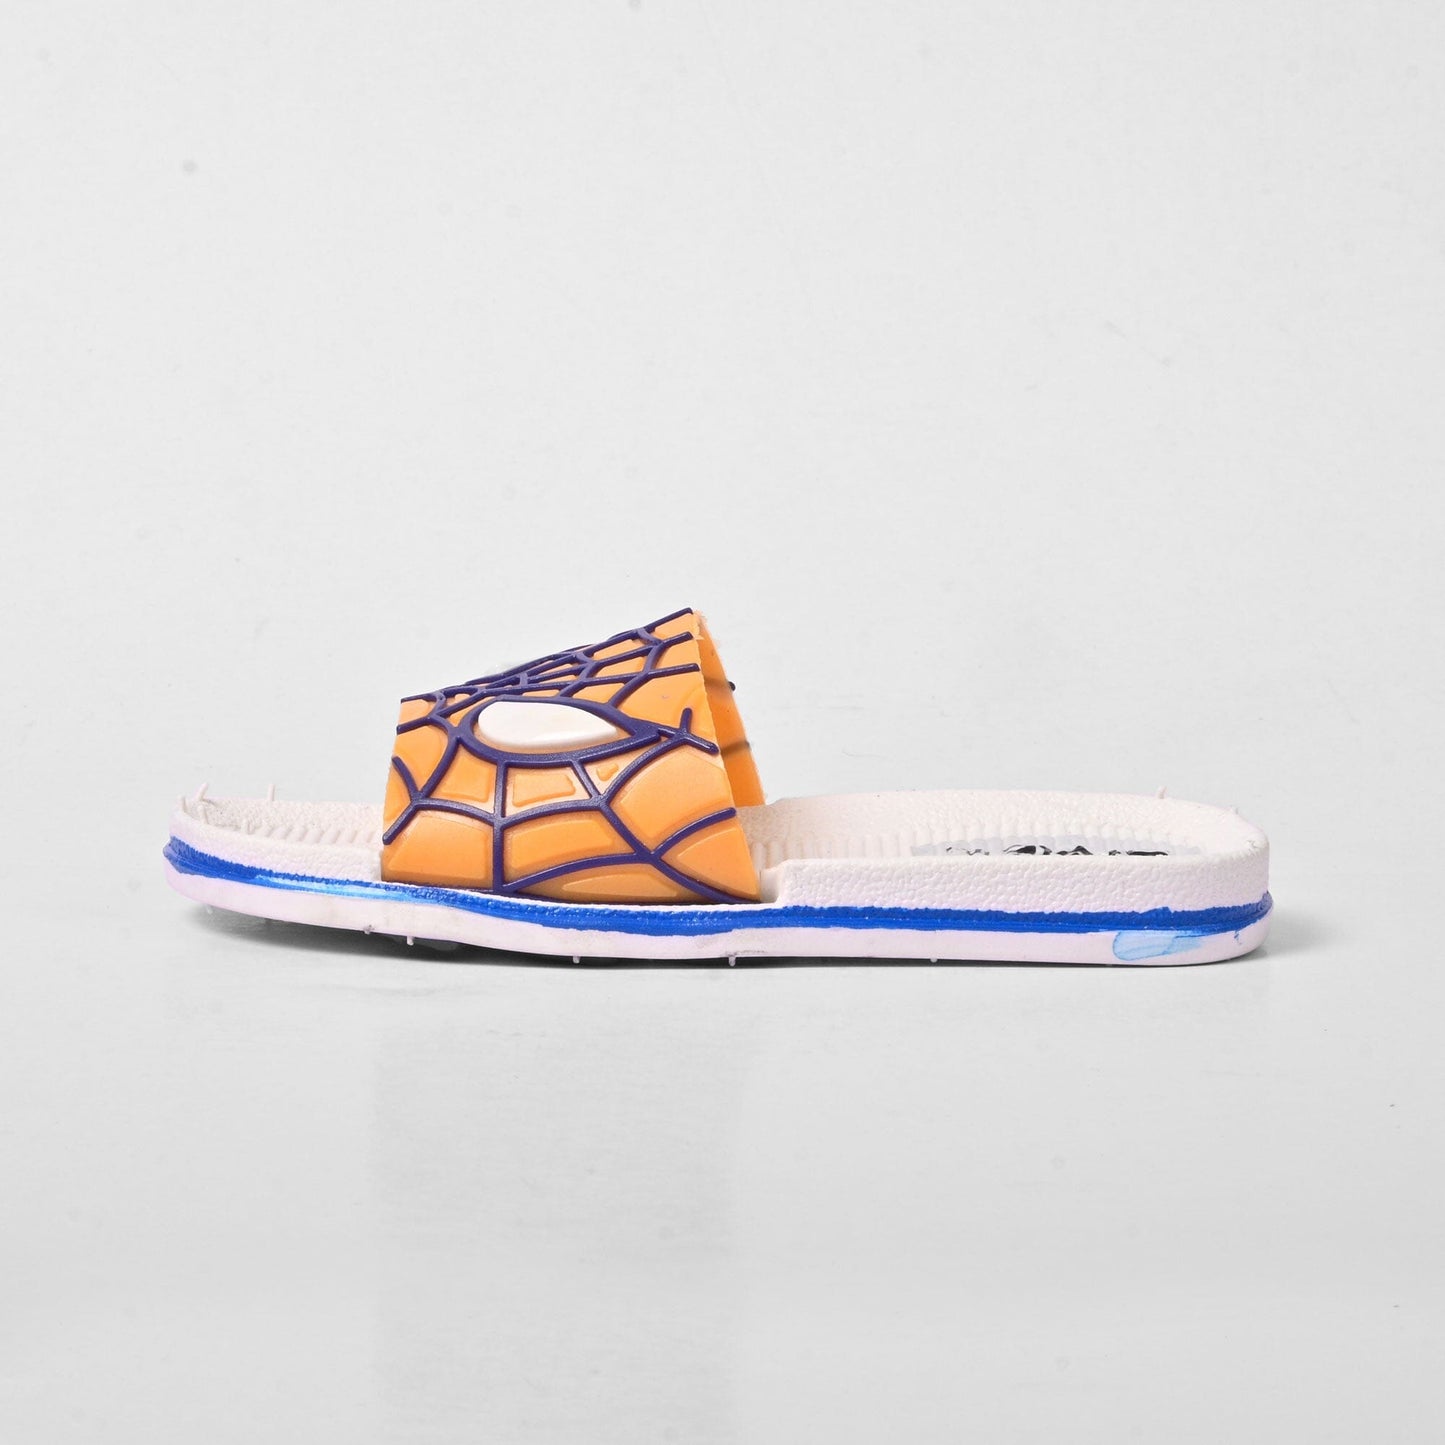 Style Inn Boy's Spiderman Design Slippers Boy's Shoes SRL Orange & White EUR 24 